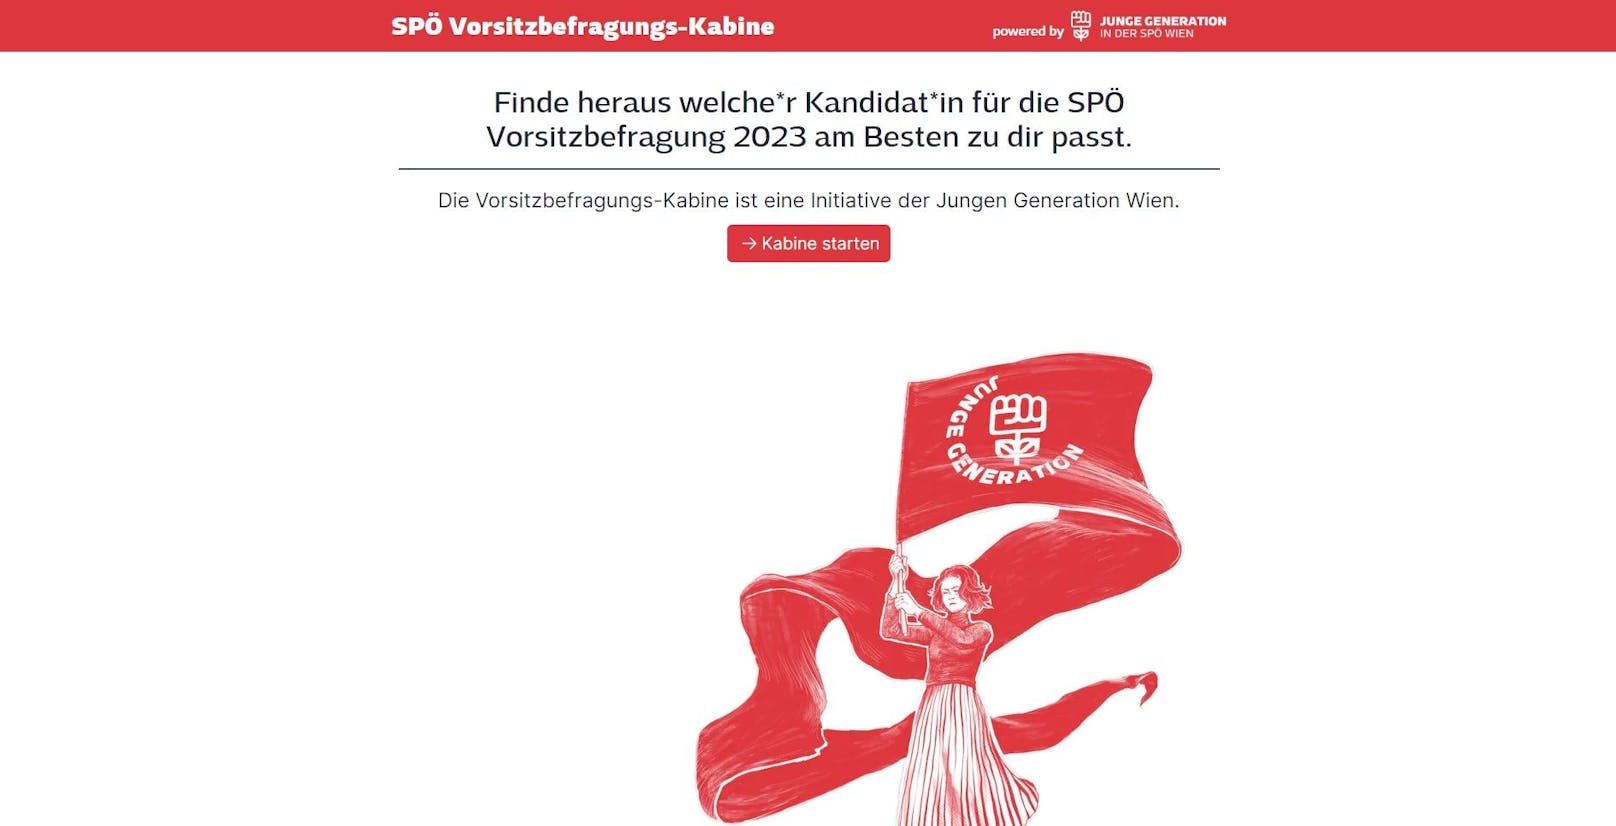 Die SPÖ-Vorsitz-Befragungskabine soll Mitgliedern und Interessierten die Möglichkeit zu geben, die Kandidat*innen und ihre Programme näher kennenzulernen.